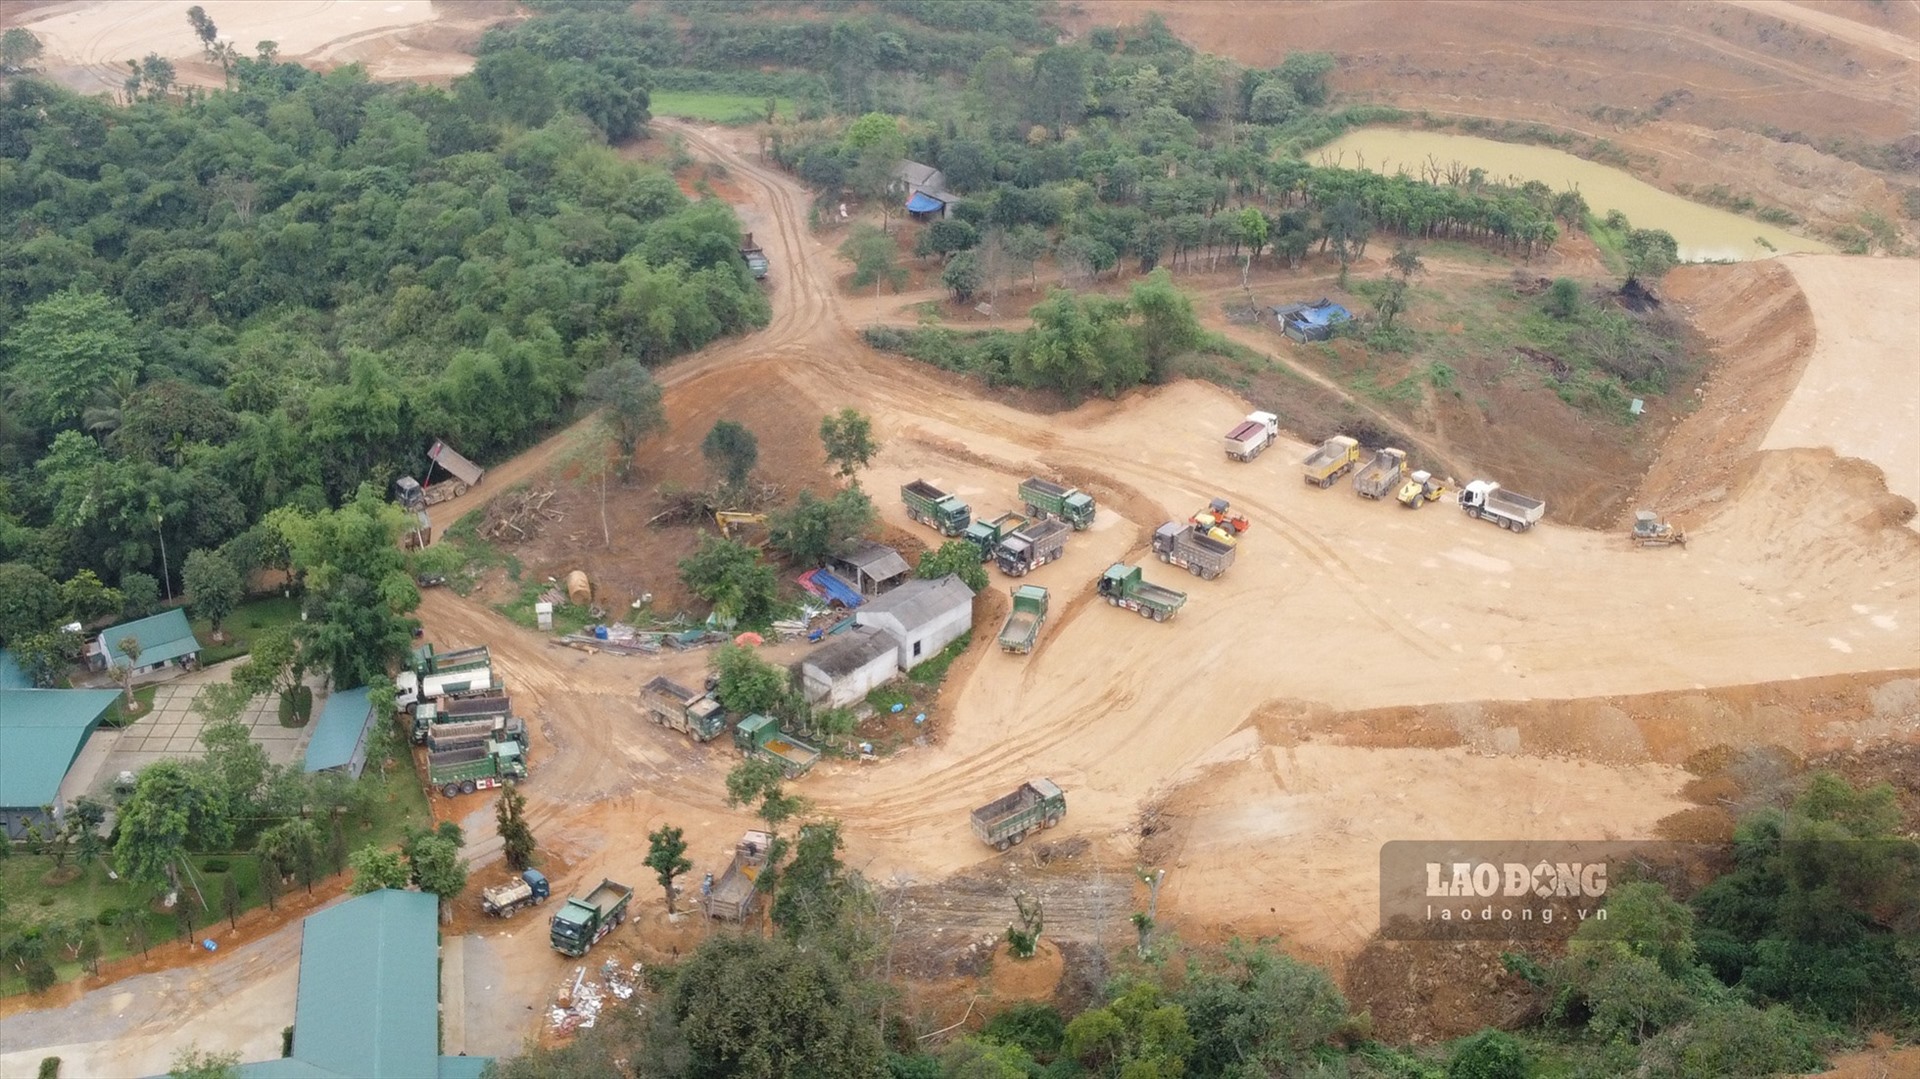 Sau phản ánh của Lao Động, UBND huyện Lương Sơn đã ra quyết định xử phạt trong lĩnh vực xây dựng đối với Chủ đầu tư dự án Khu đô thị sinh thái nghỉ dưỡng cao cấp Đông Trường Sơn 40 triệu đồng. Ảnh: Minh Nguyễn